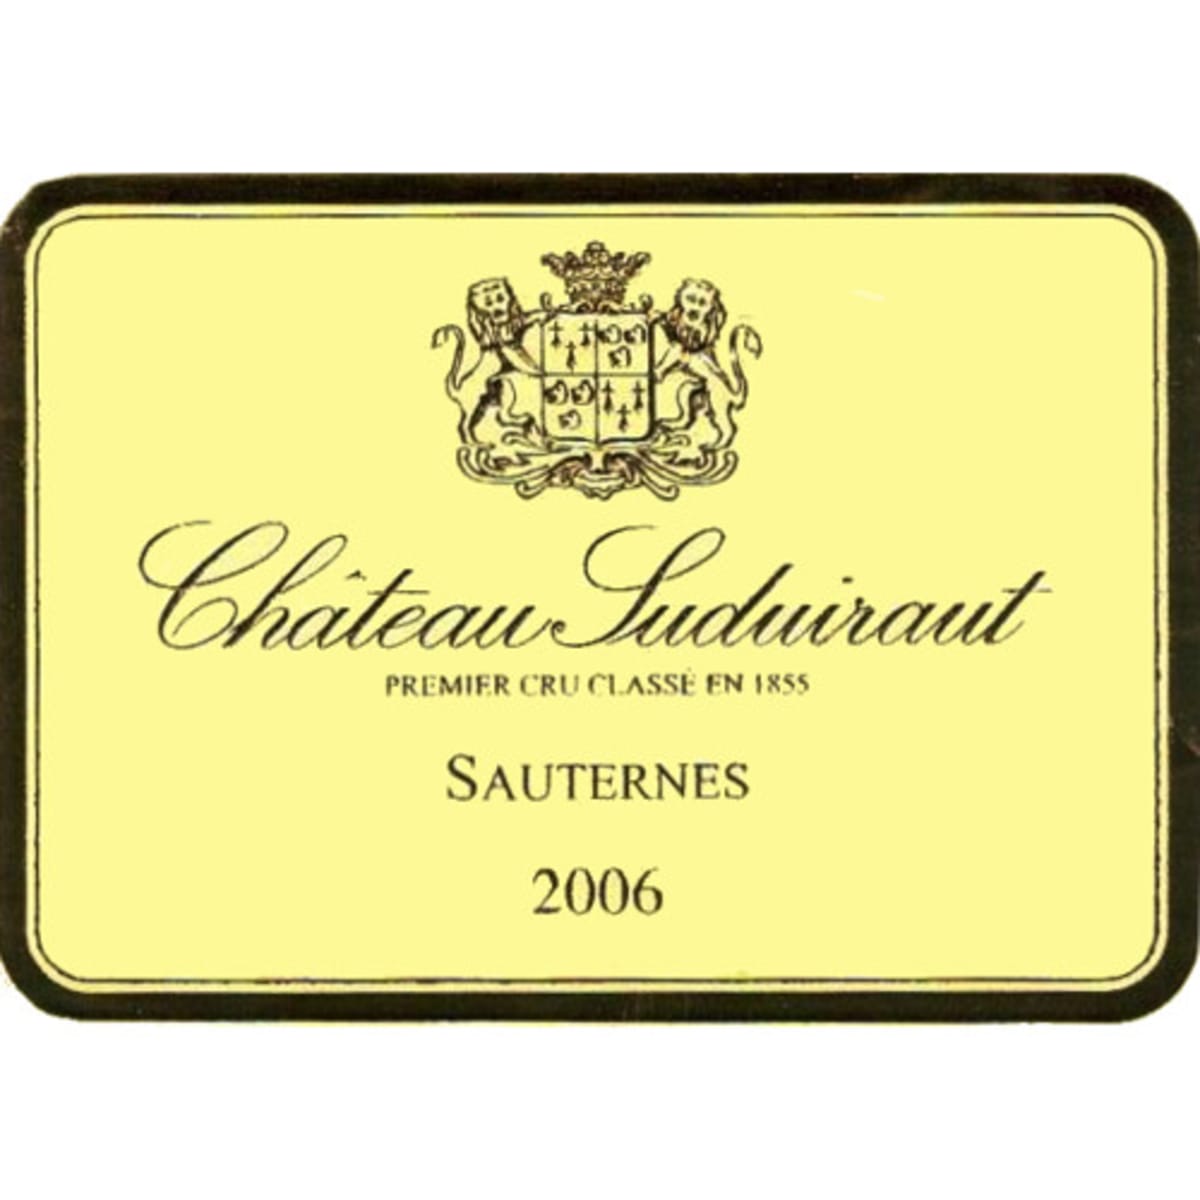 Chateau Suduiraut Sauternes 2006 Front Label